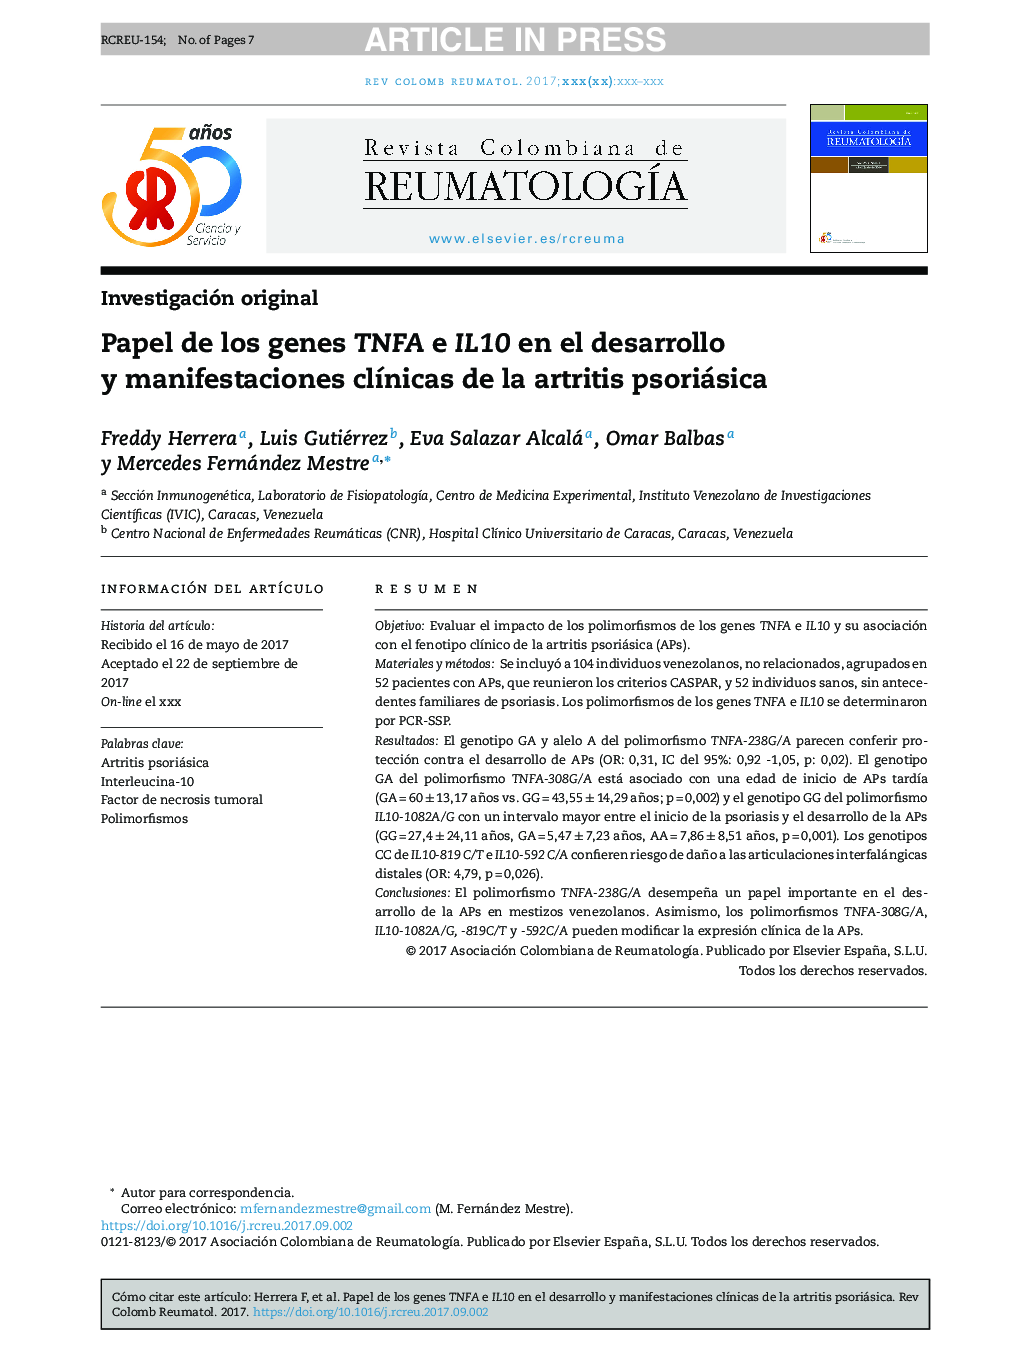 Papel de los genes TNFA e IL10 en el desarrollo y manifestaciones clÃ­nicas de la artritis psoriásica